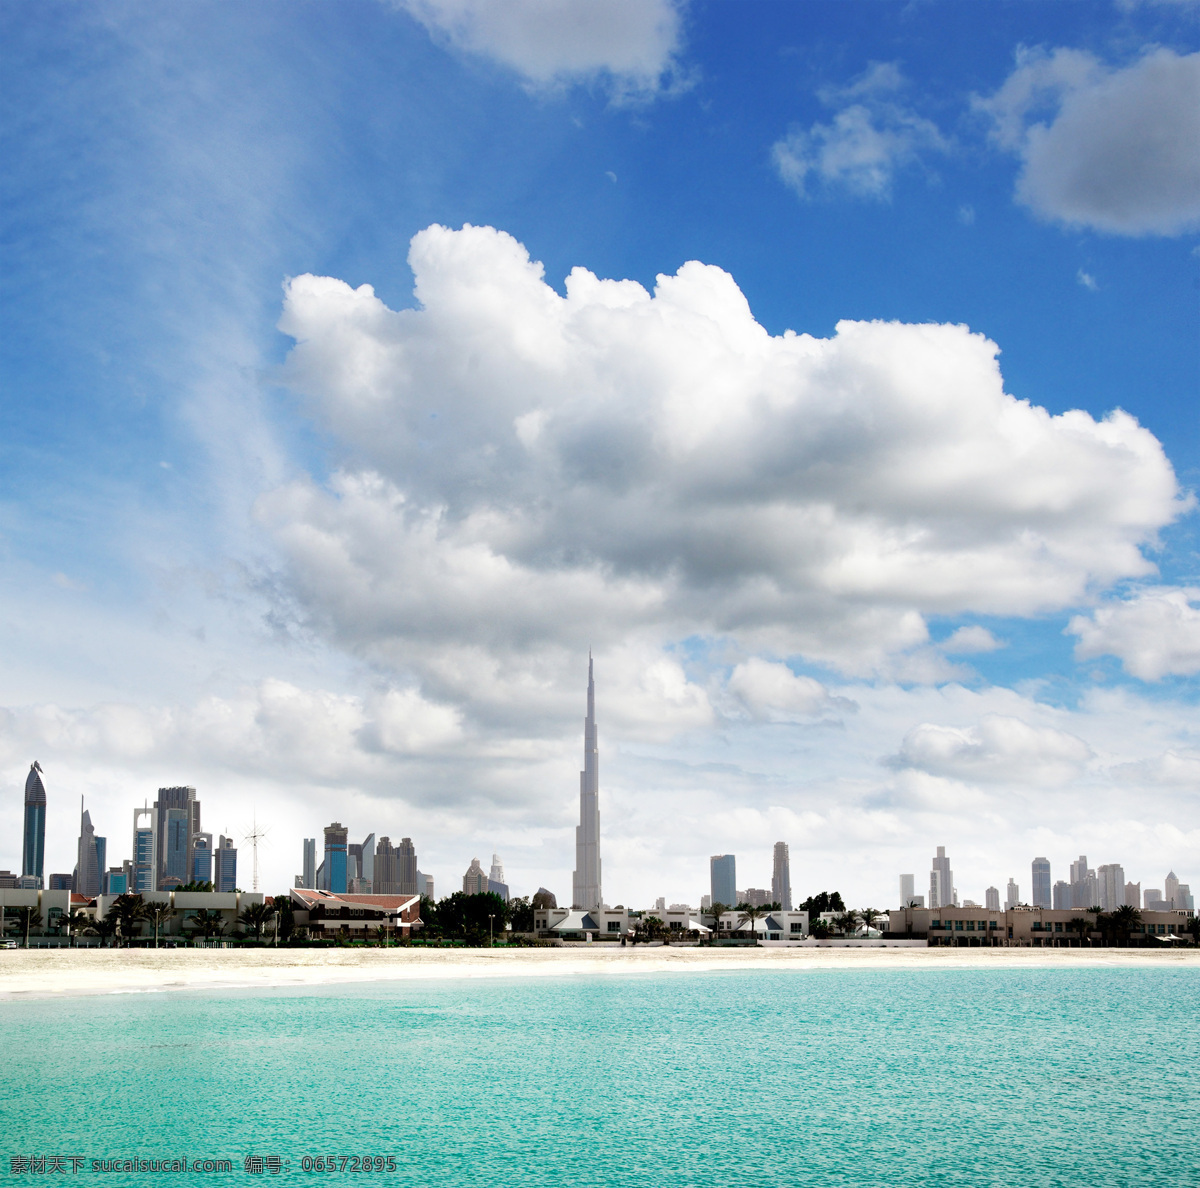 迪拜 高楼大厦 繁华都市 迪拜风景 城市风景 美丽风景 建筑设计 环境家居 哈利法塔 城市风光 白色